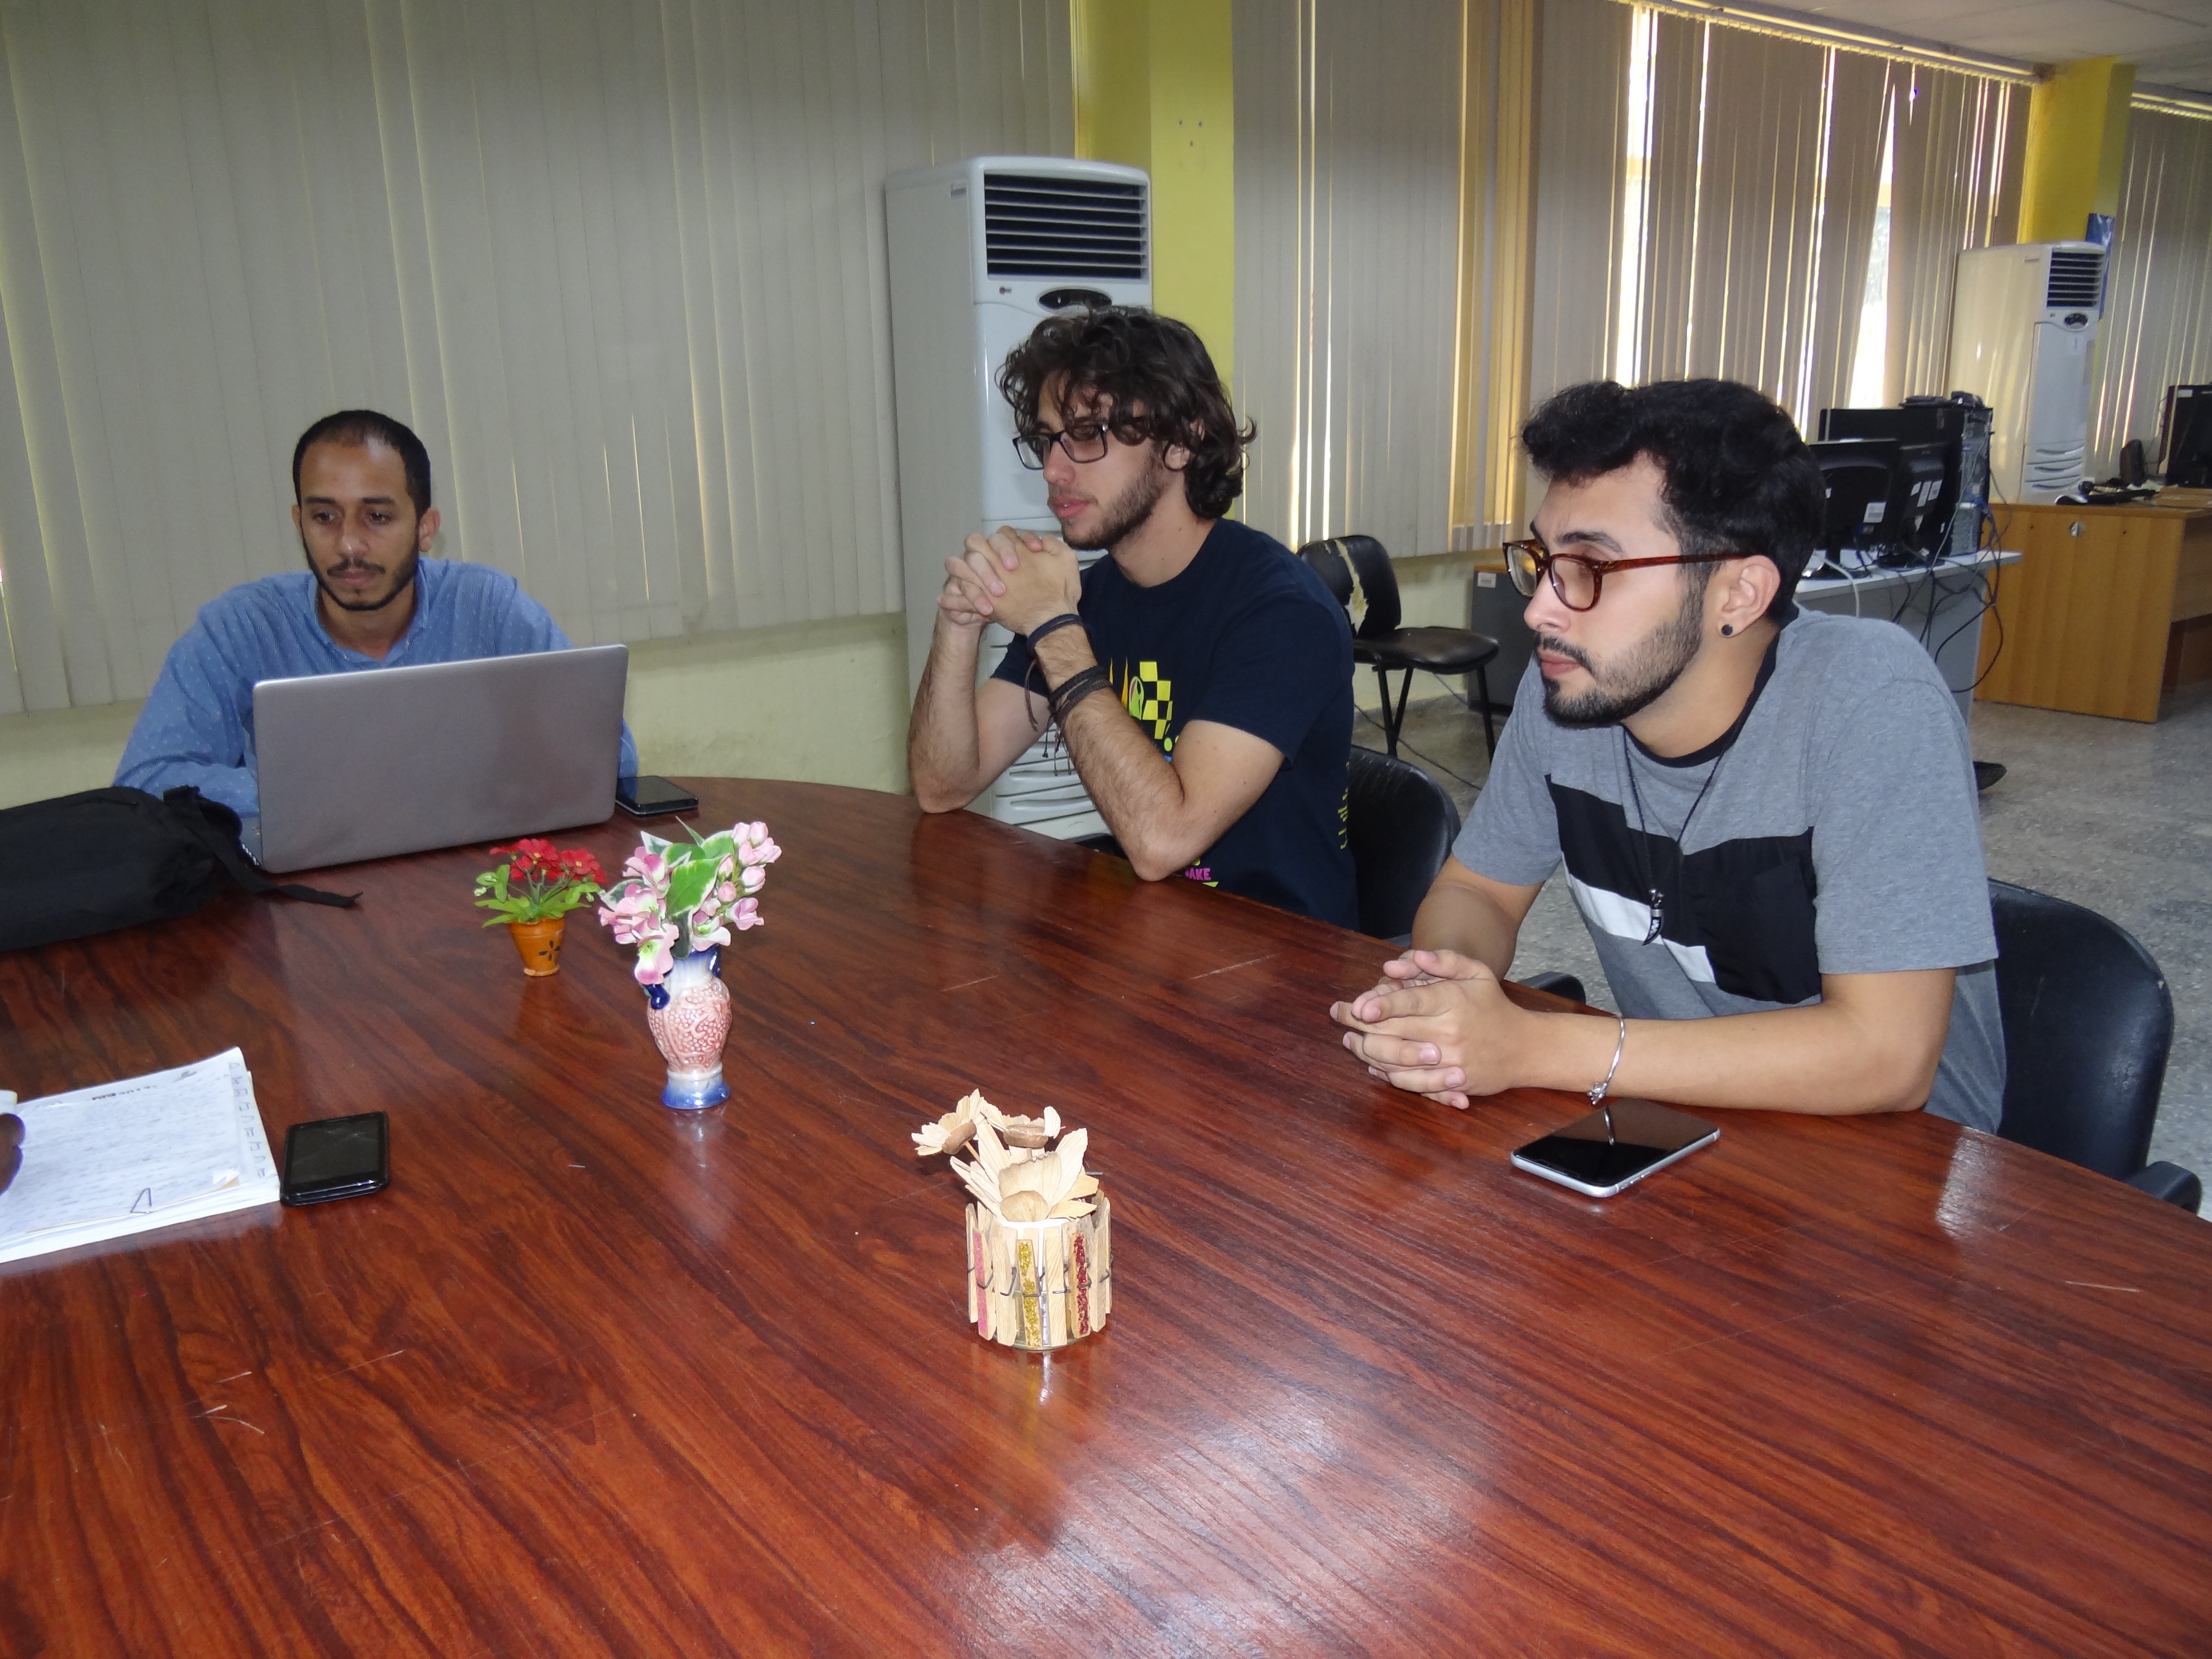 Especialistas y estudiantes vinculados al Cegel dialogaron sobre la amplia gama de productos informáticos en las que se encuentran trabajando.